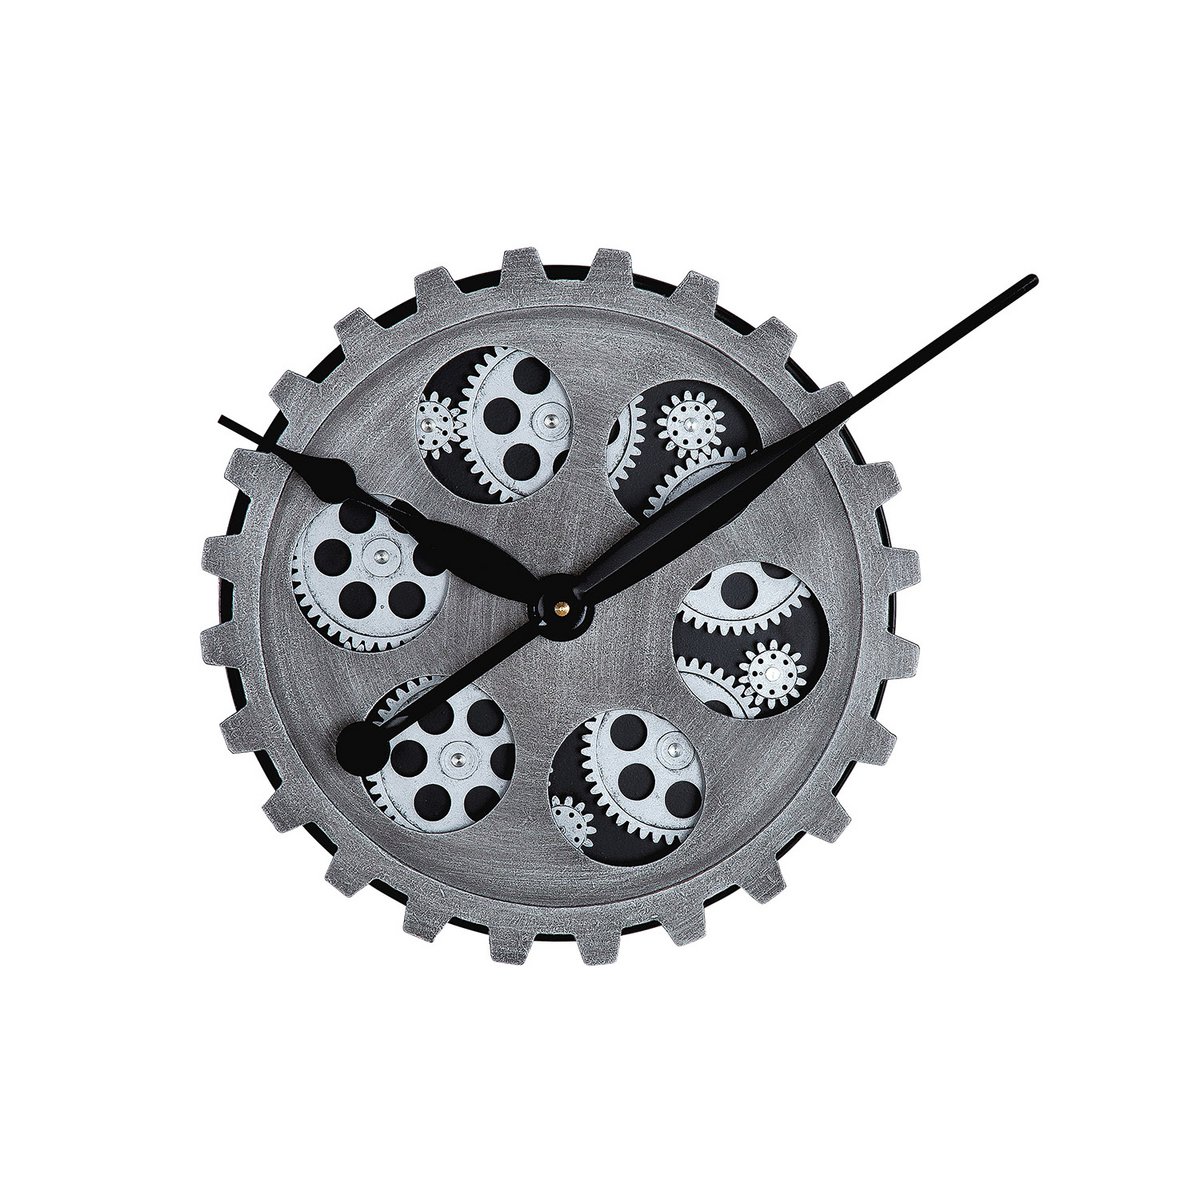 Gilde Uhr Metall 30cm Wanduhr Modell Gears Zahnräder